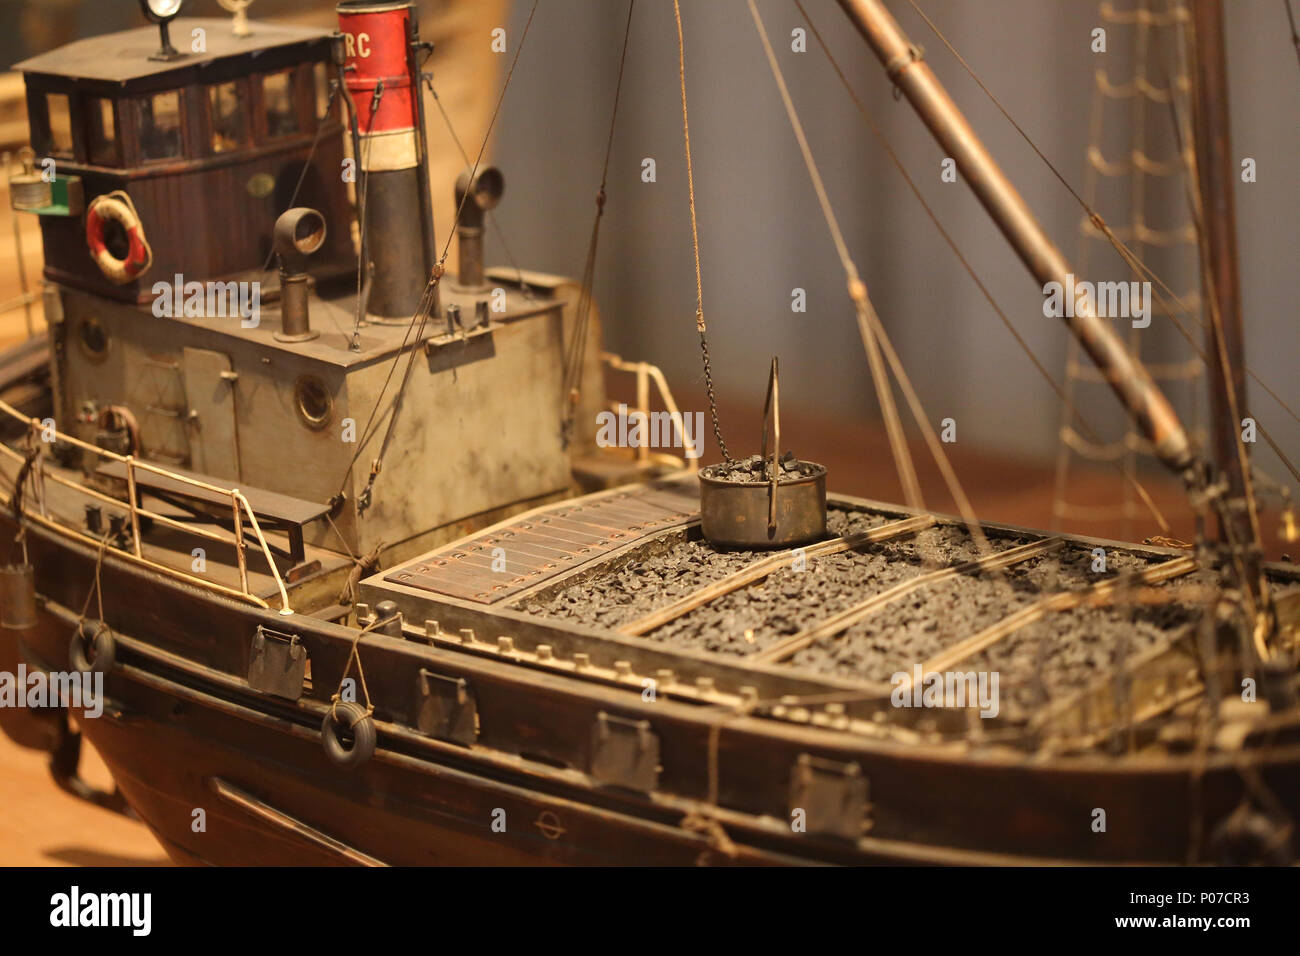 Modell der Cap Roig. Kleines Schiff von Tansporting Kohle. Maßstab: 1:30. Maritime Museum von Barcelona, Katalonien, Spanien. Stockfoto